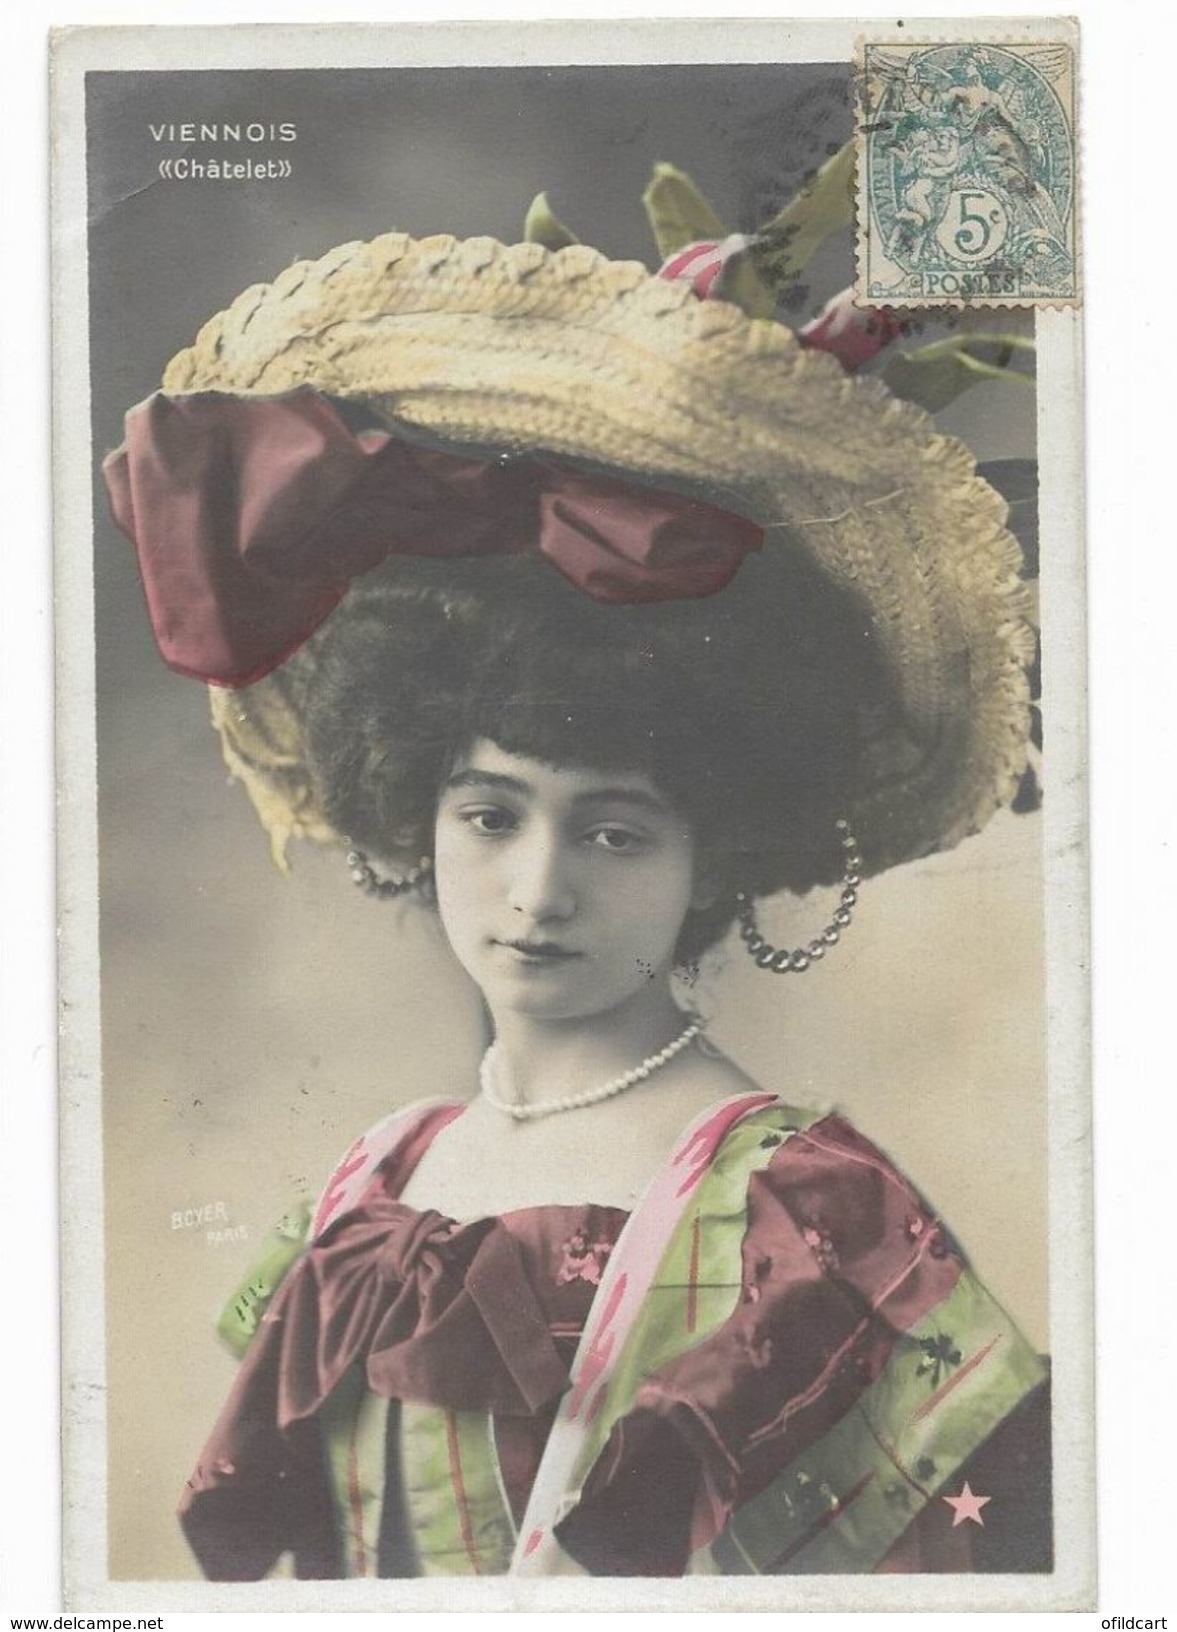 Viennois - Danseuse Artiste De La Belle époque - Carte Postale Ancienne -  Femme Lady Frau - Espagne Spain - Artistes